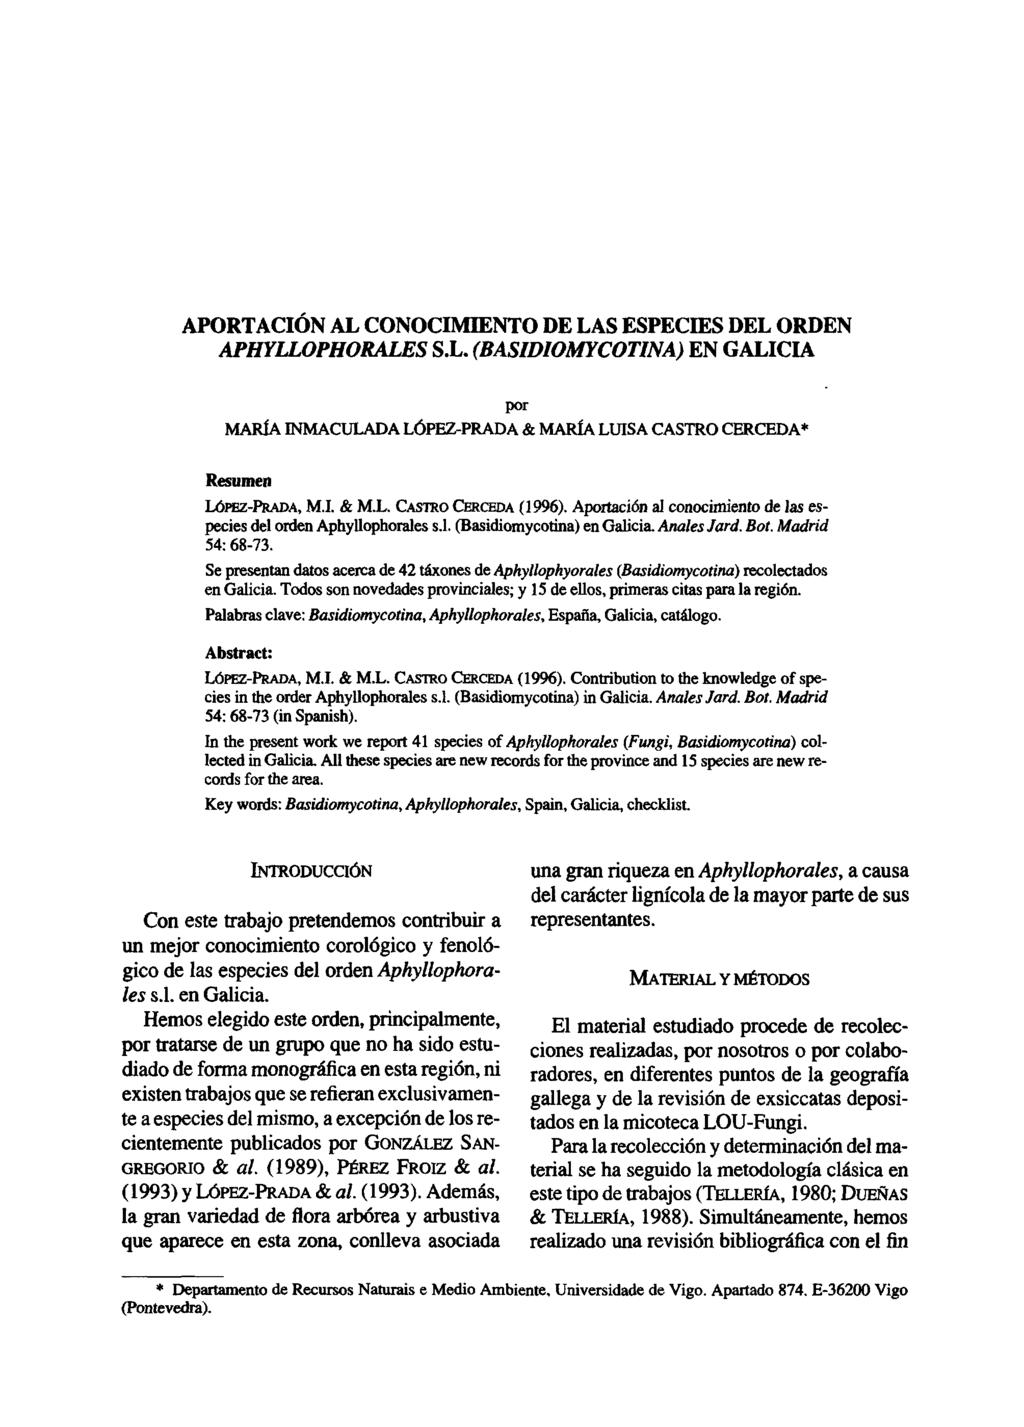 APORTACIÓN AL CONOCIMIENTO DE LAS ESPECIES DEL ORDEN APHYLLOPHORALES S.L. (BASID1OMYCOTINA) EN GALICIA por MARÍA INMACULADA LÓPEZ-PRADA & MARÍA LUISA CASTRO CERCEDA* Resumen LÓPEZ-PRADA, M.I. & M.L. CASTRO CERCEDA (1996).